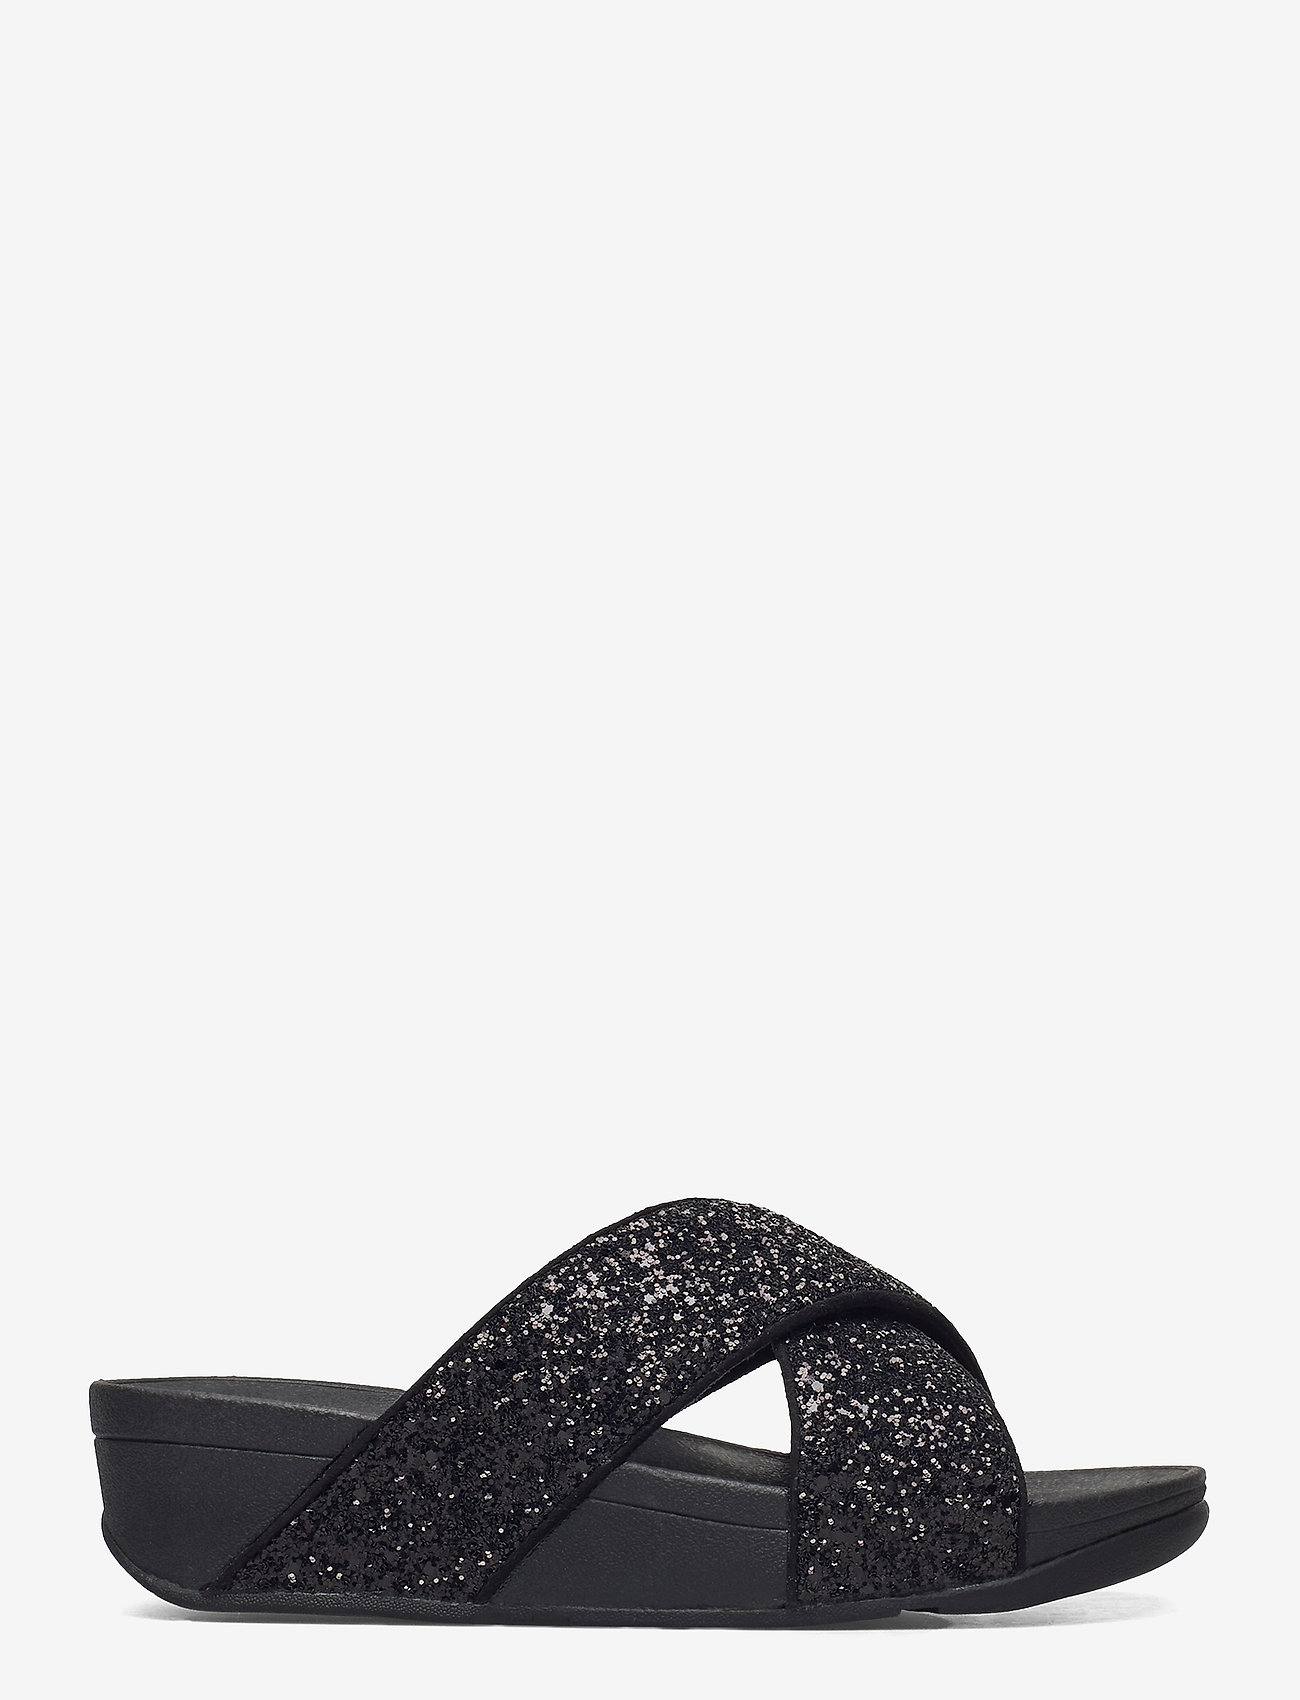 black glitter sandals flat